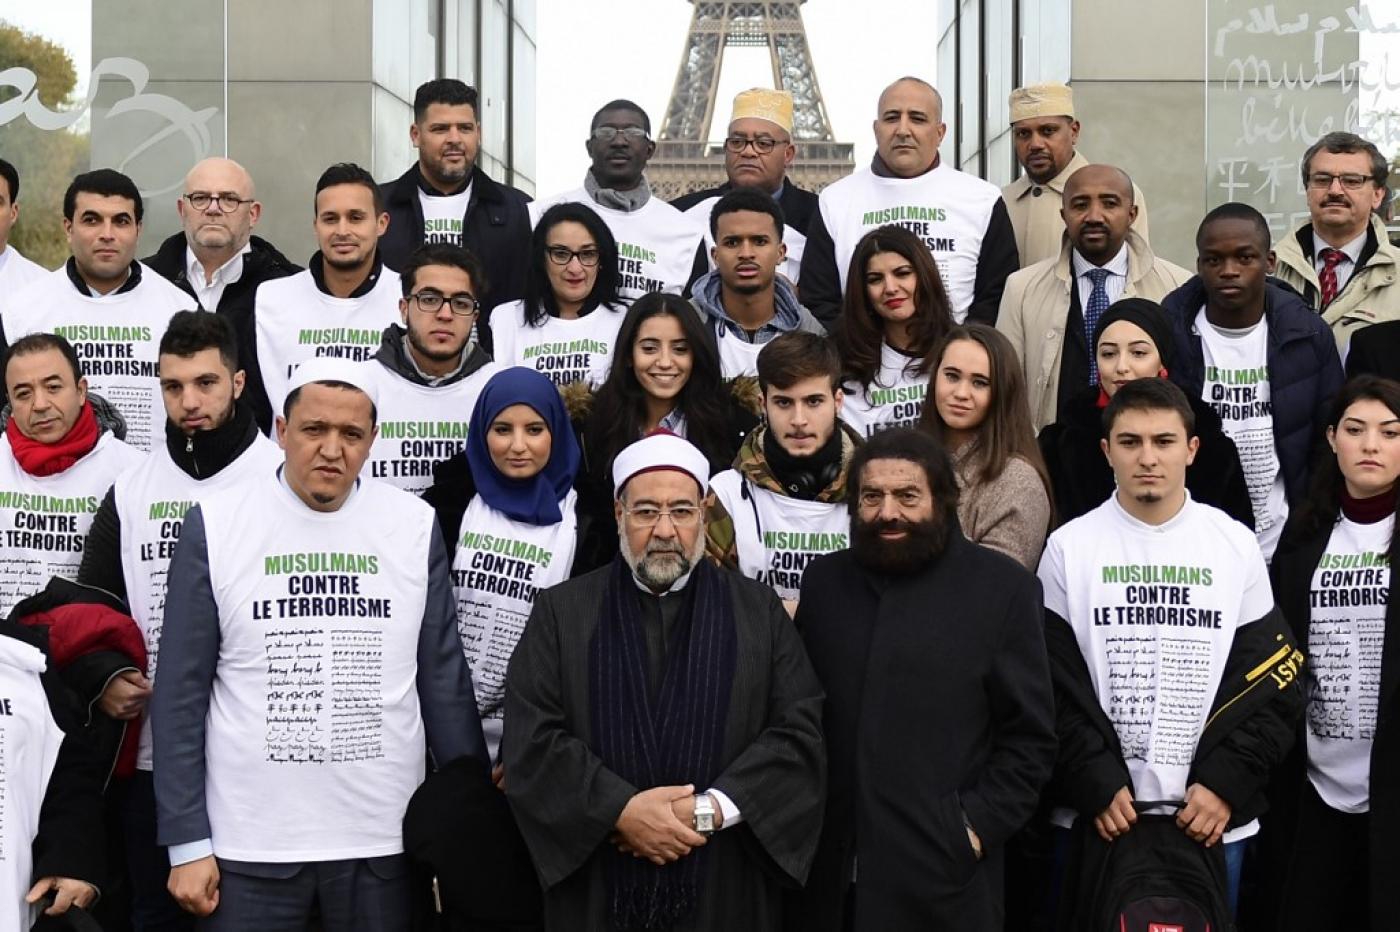 Les participants à un rassemblement « Musulmans contre le terrorisme » en 2017, marquant les deux années écoulées depuis les attentats de Paris (AFP)